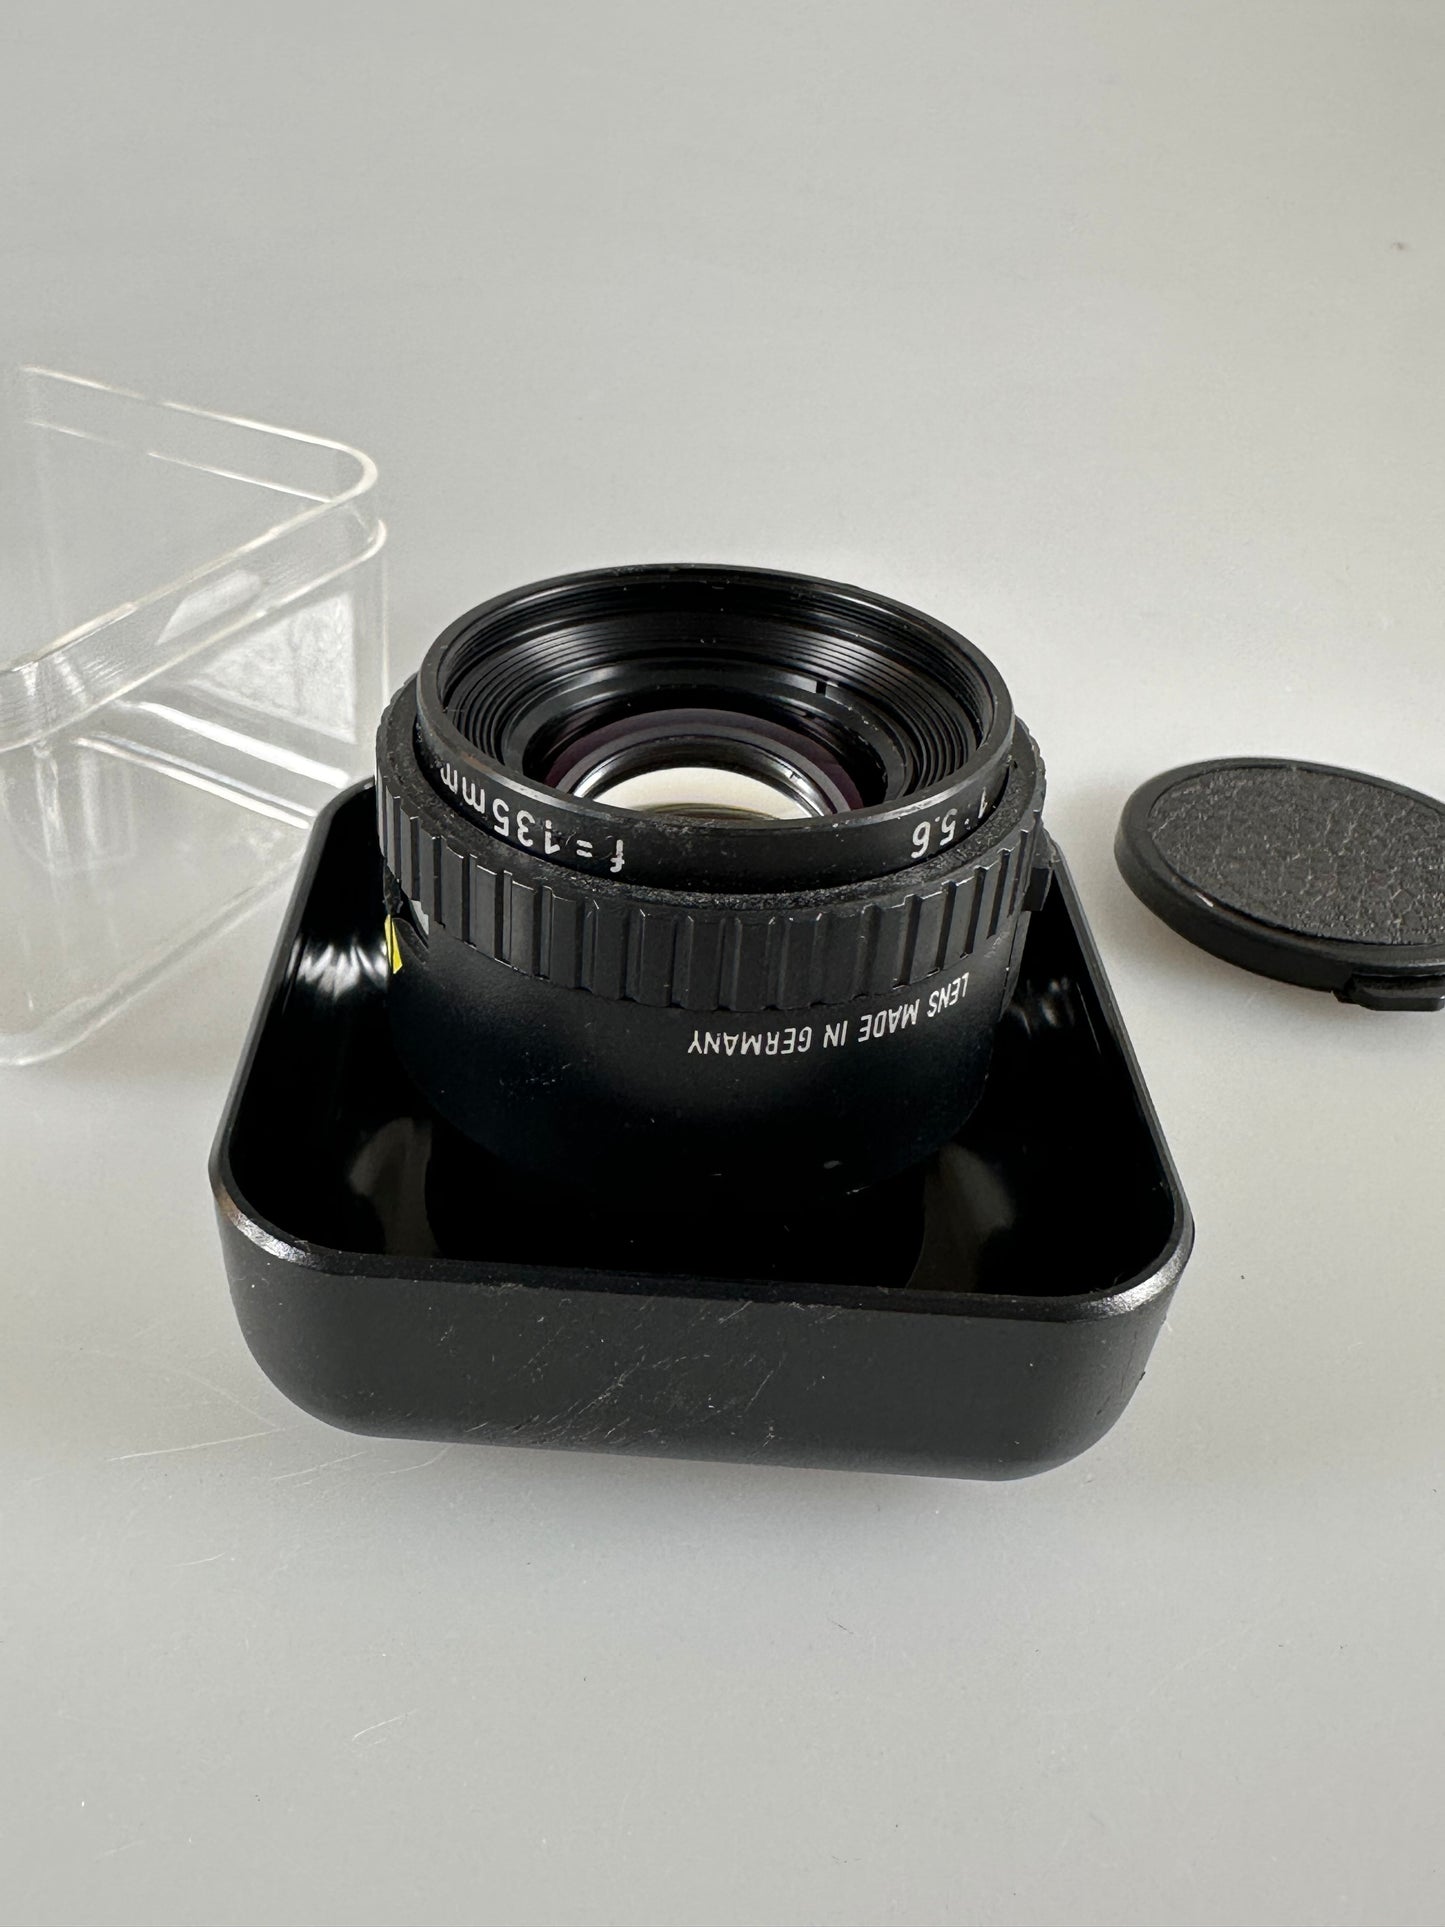 Rodenstock 135mm f5.6 Rodagon Enlarging Lens